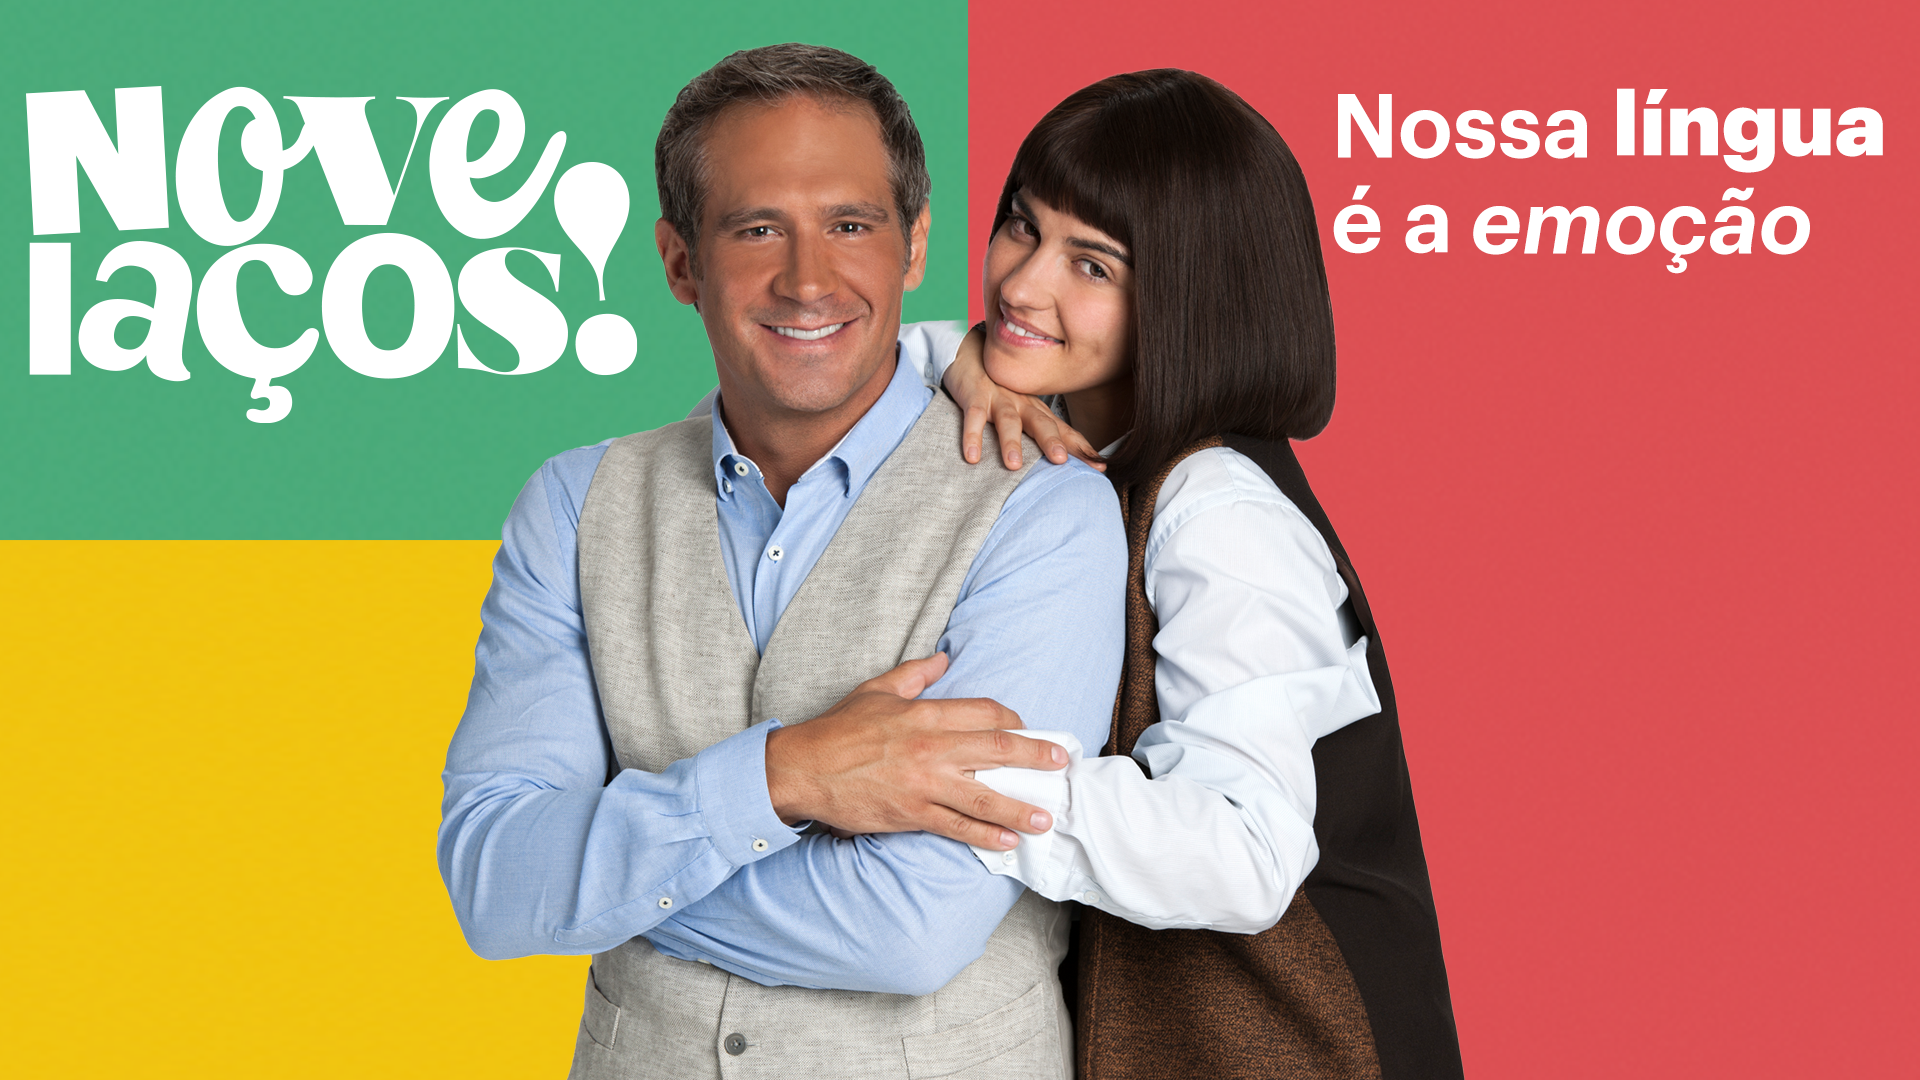 “Novelacos!”: proyecto de Televisa Digital para países de habla portuguesa